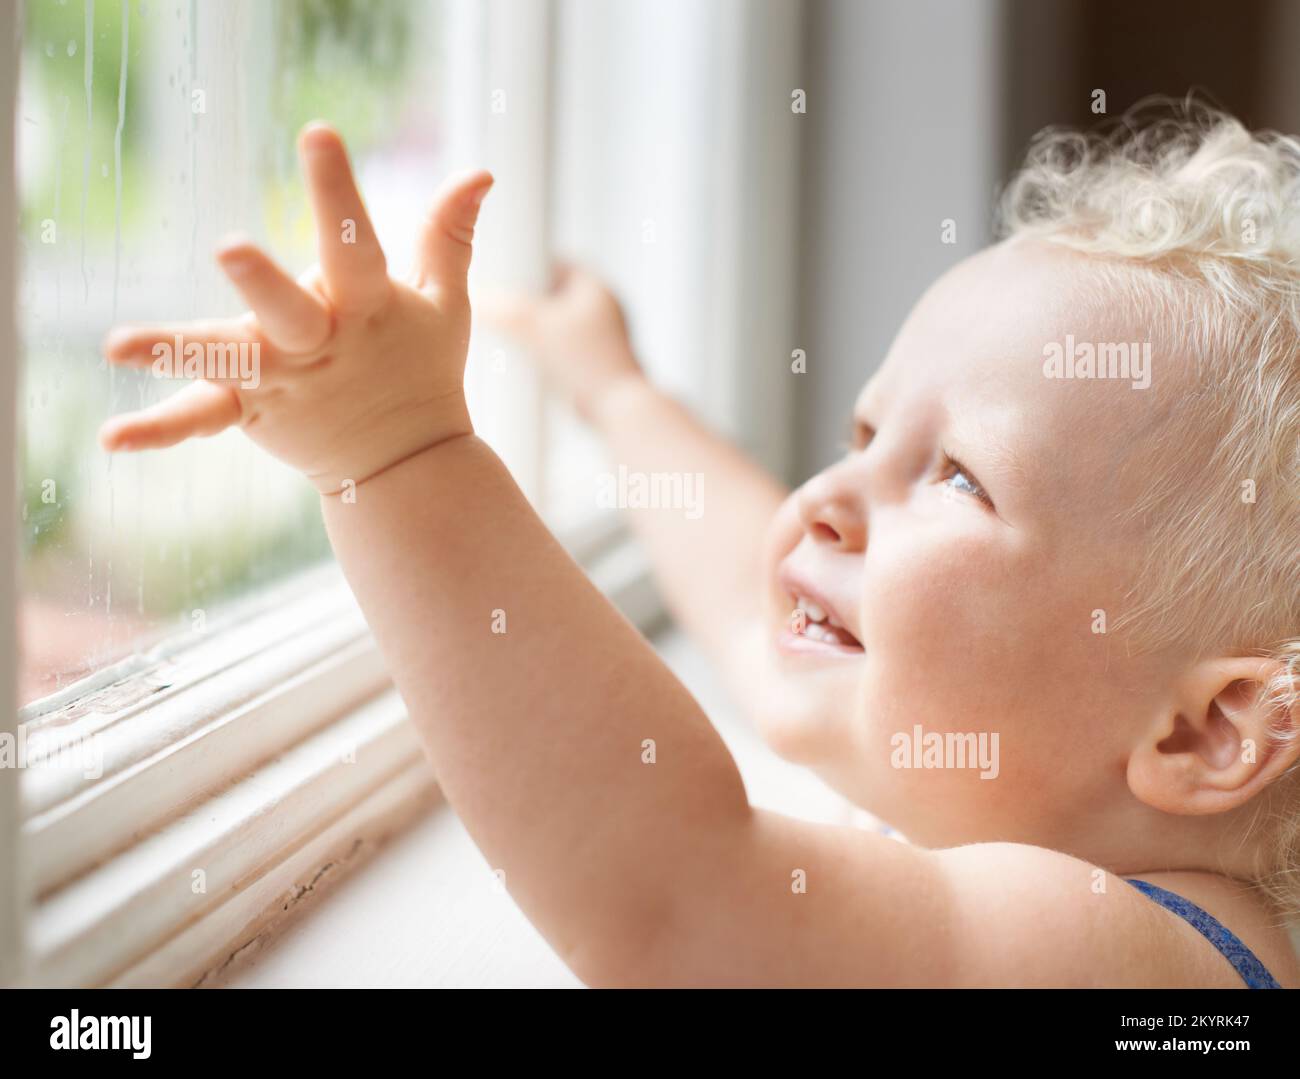 Sie starren in Staunen über die Welt. Ein süßes kleines Kleinkind, das aus Verwunderung durch ein Fenster schaut. Stockfoto